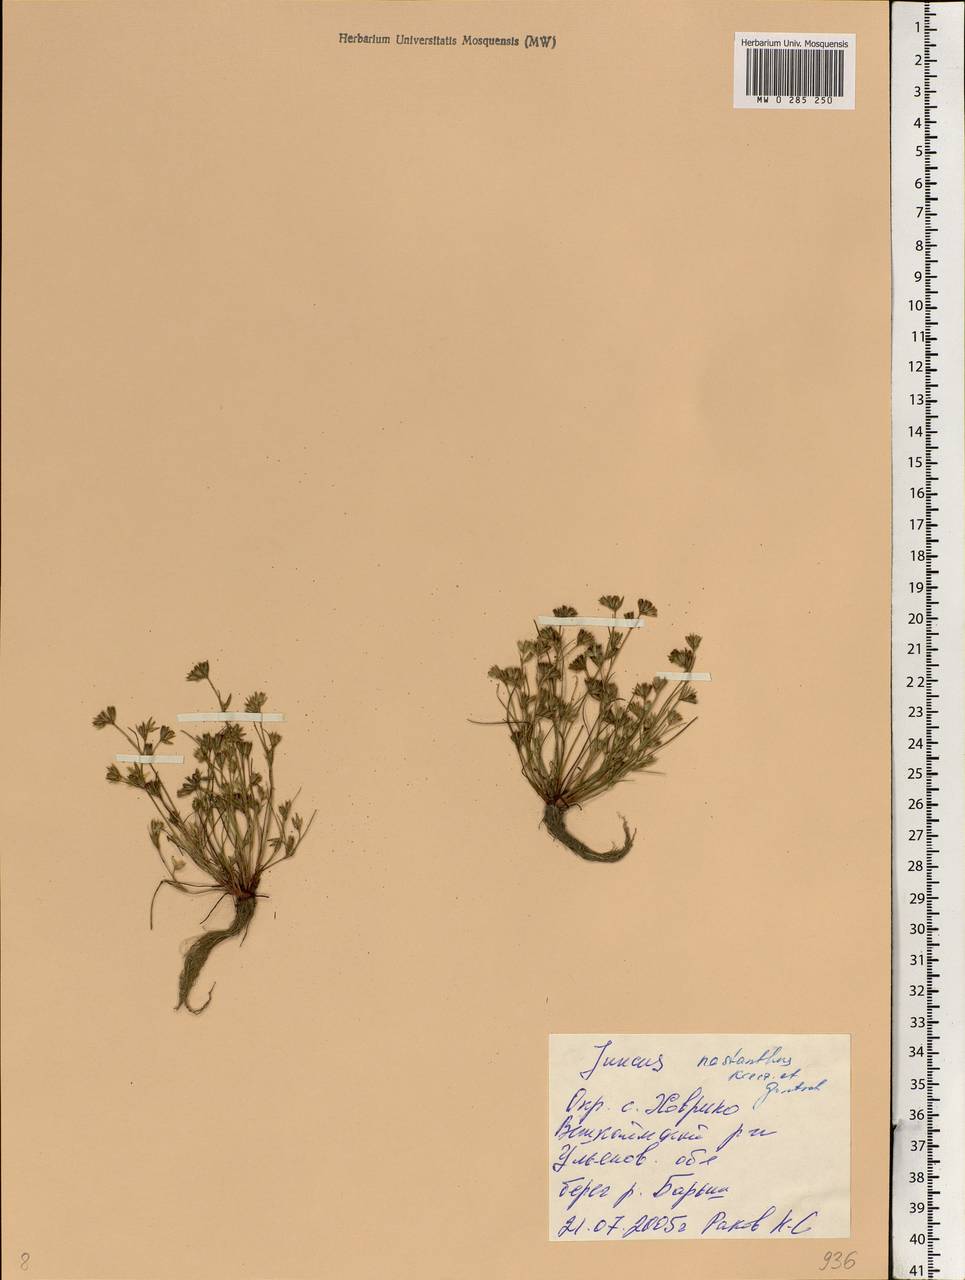 Juncus ranarius Songeon & E.P.Perrier, Eastern Europe, Middle Volga region (E8) (Russia)